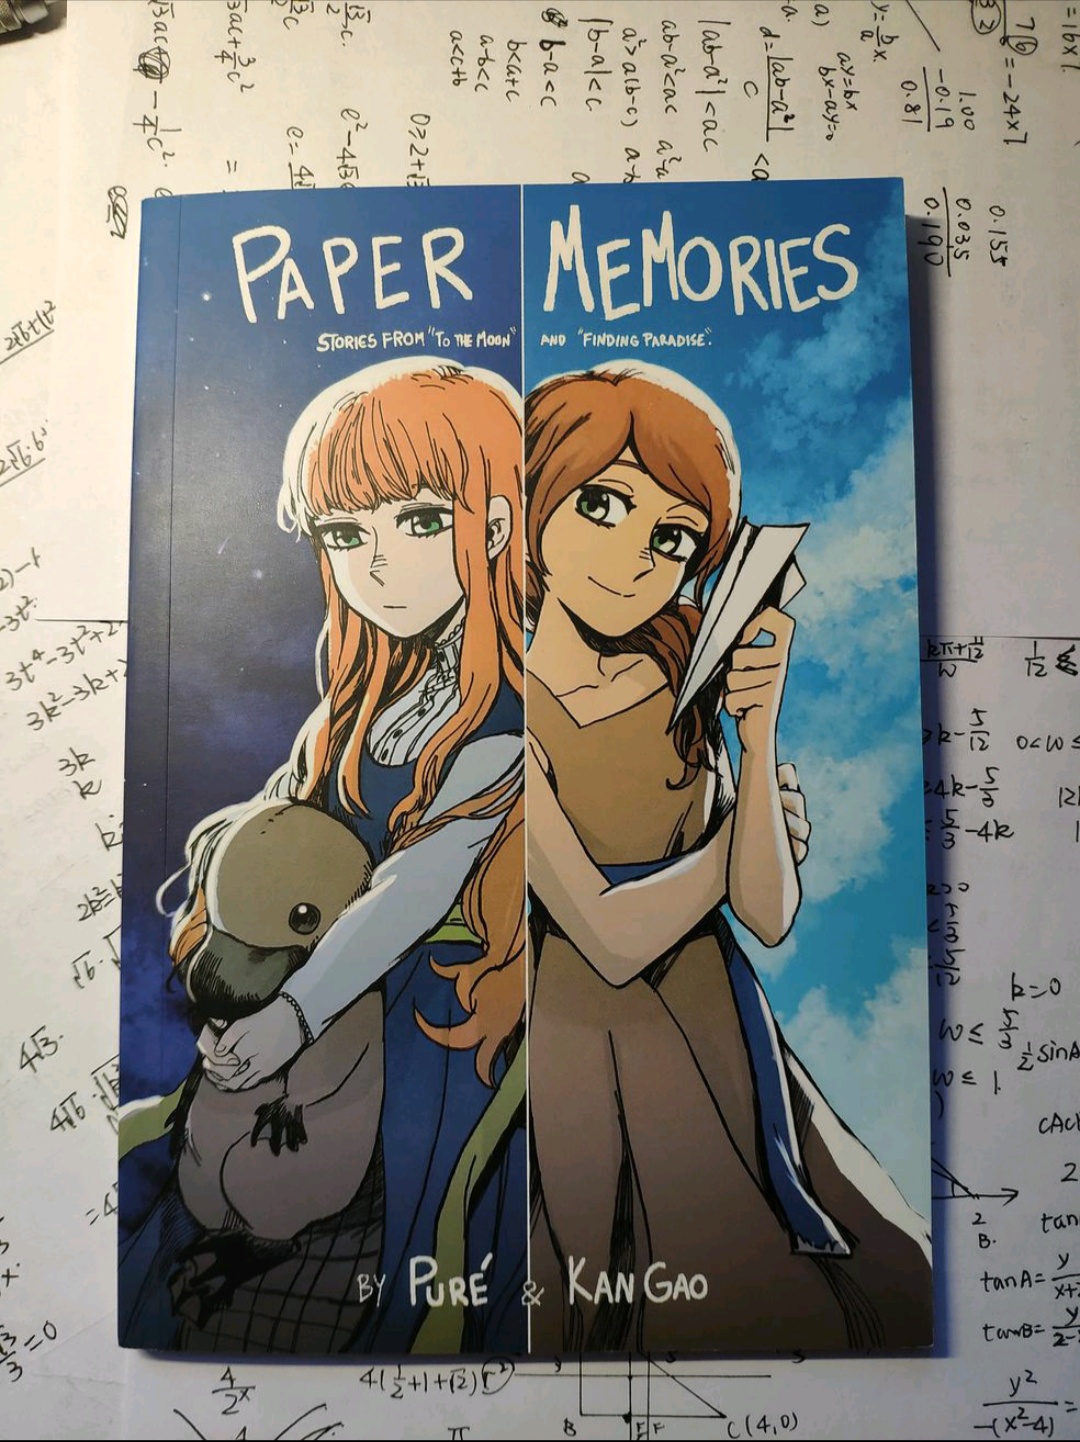 去月球官方漫画书「Paper Memories」实体版已发布 - 第1张